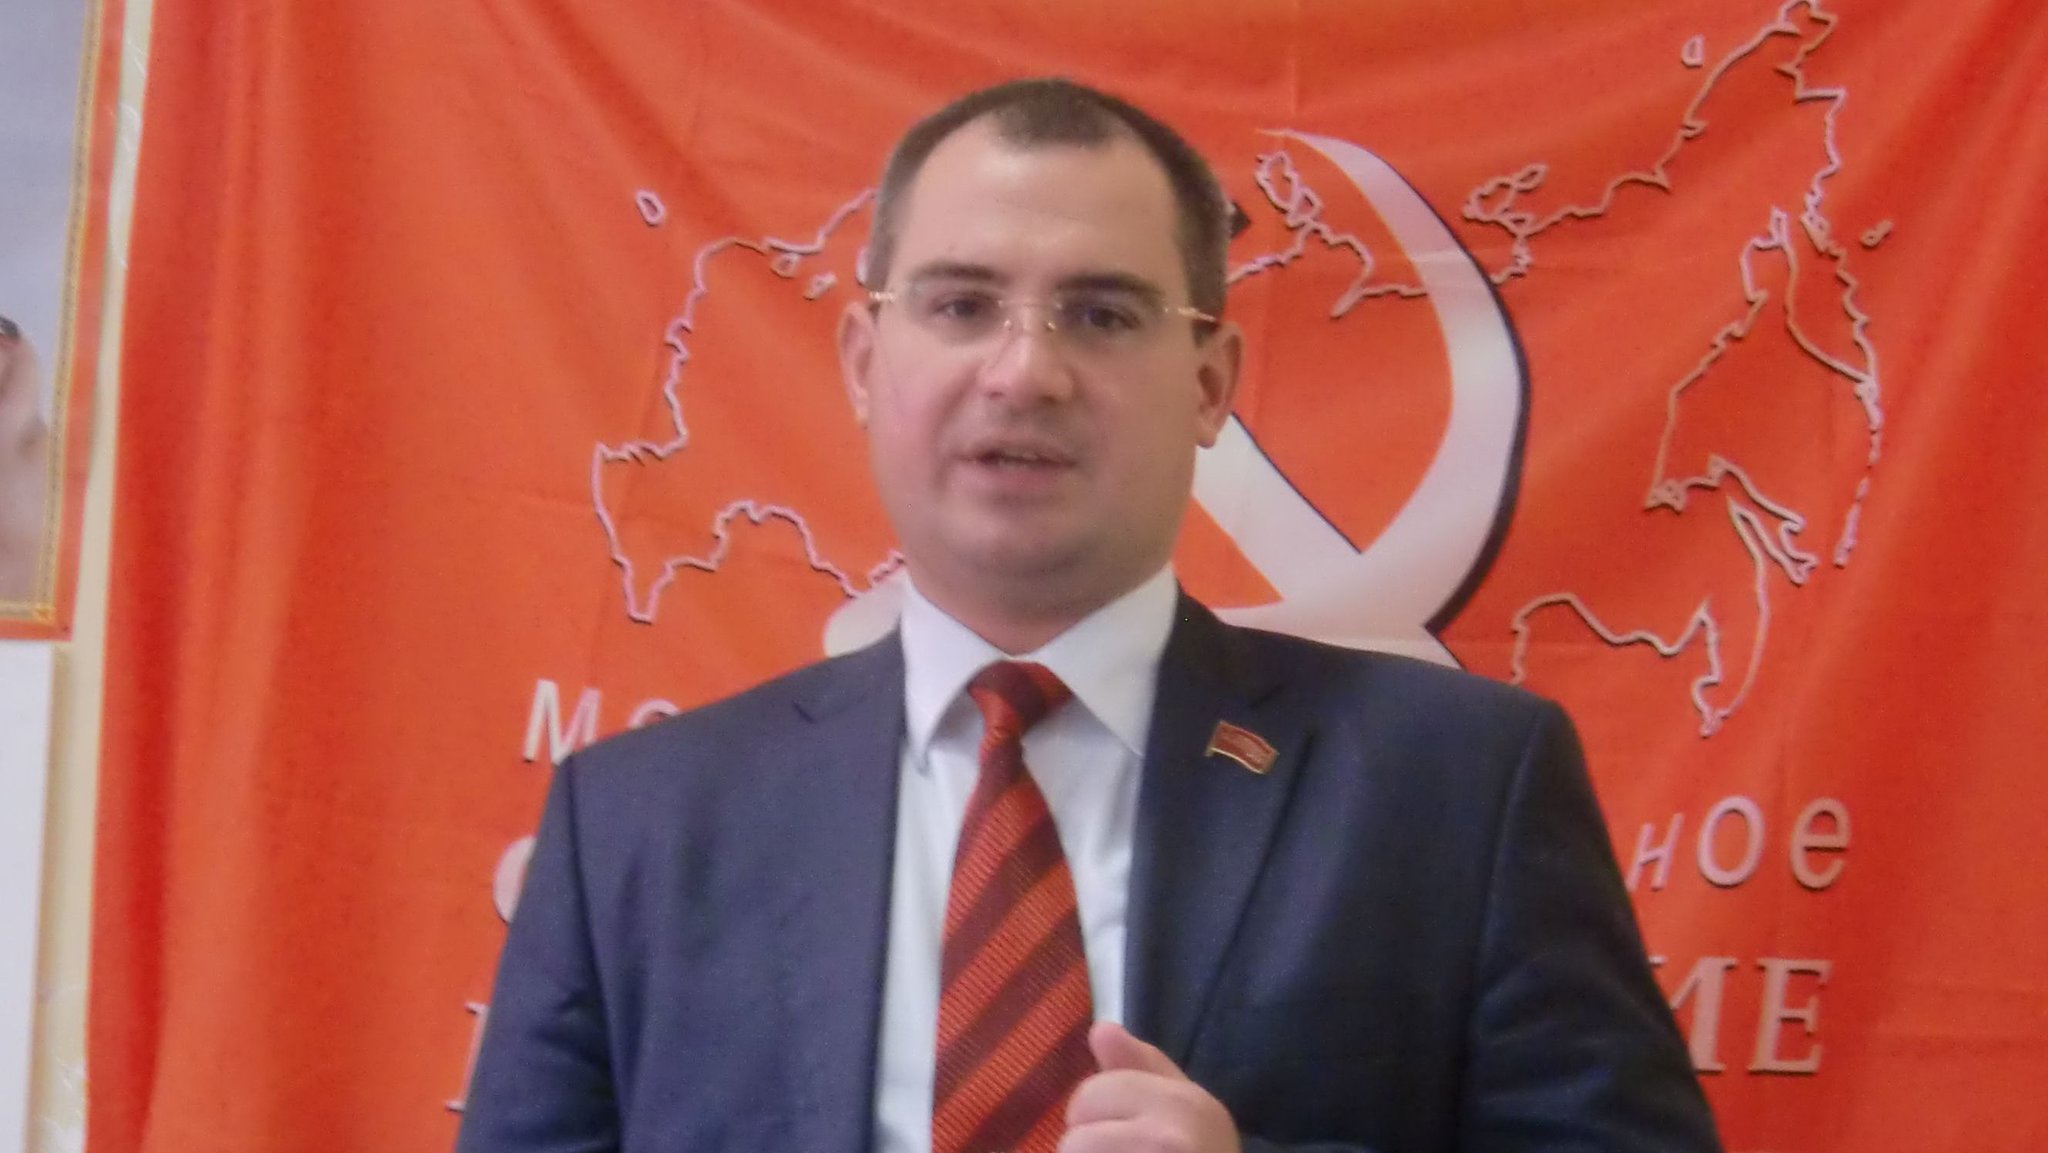 Максим Сурайкин — экс- председатель центрального комитета партии Коммунисты России